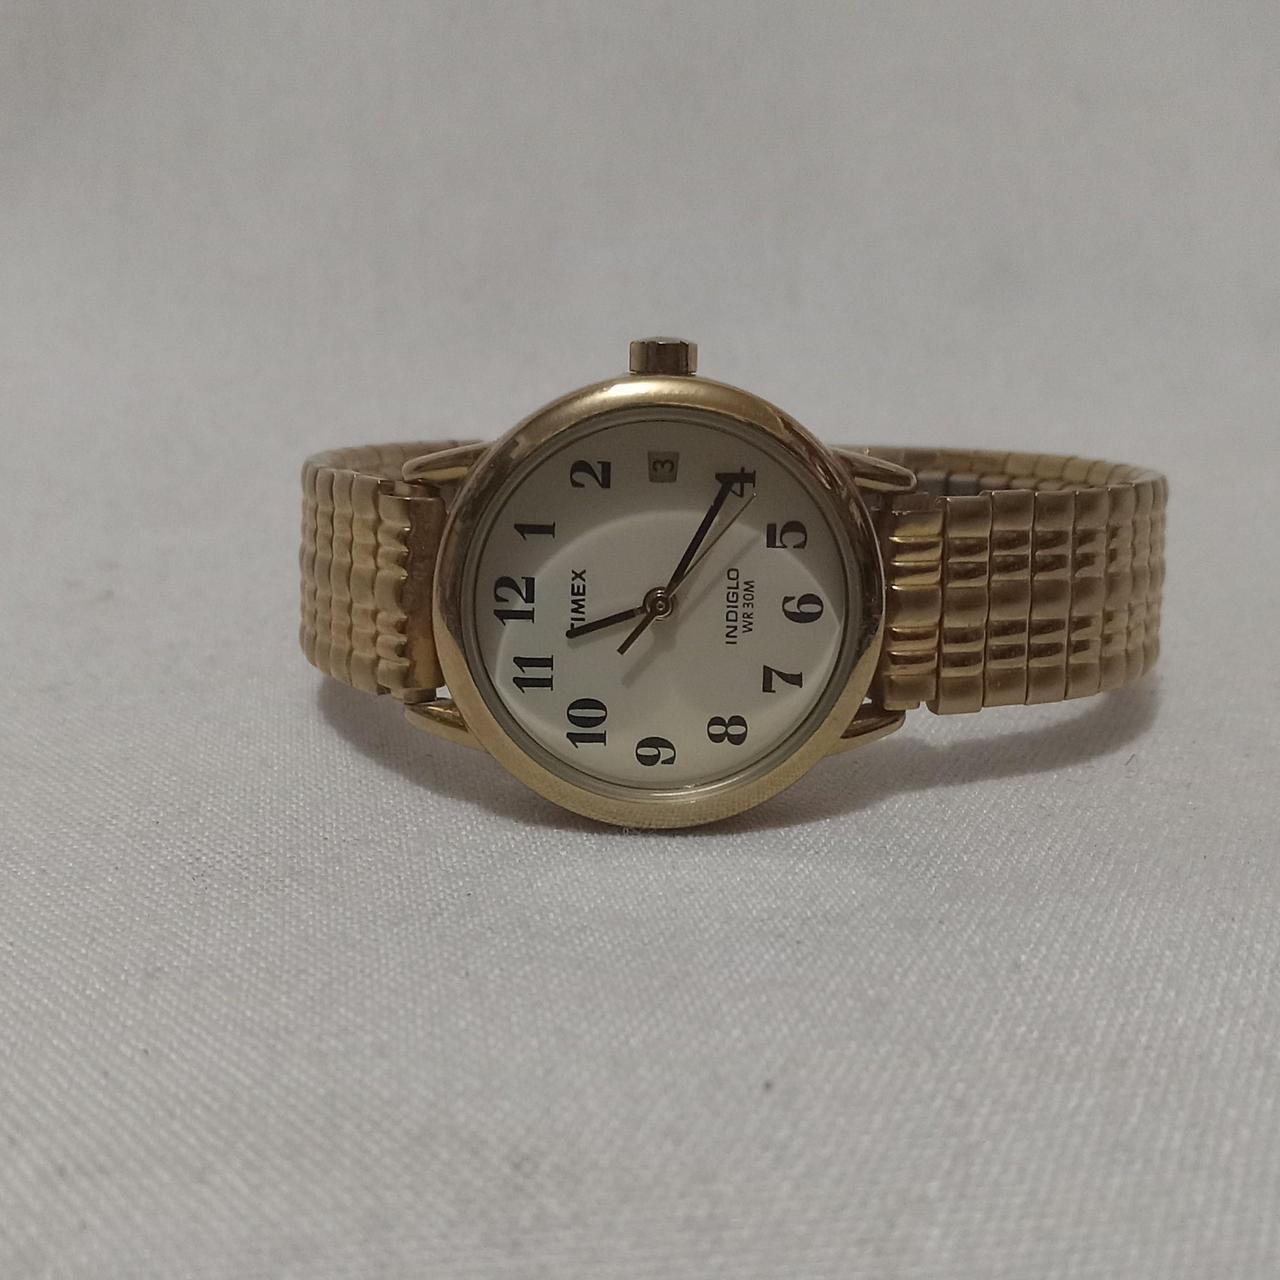 TIMEX - Indiglo - Digital - Vintage Digital Watch - Digital-Watch.com